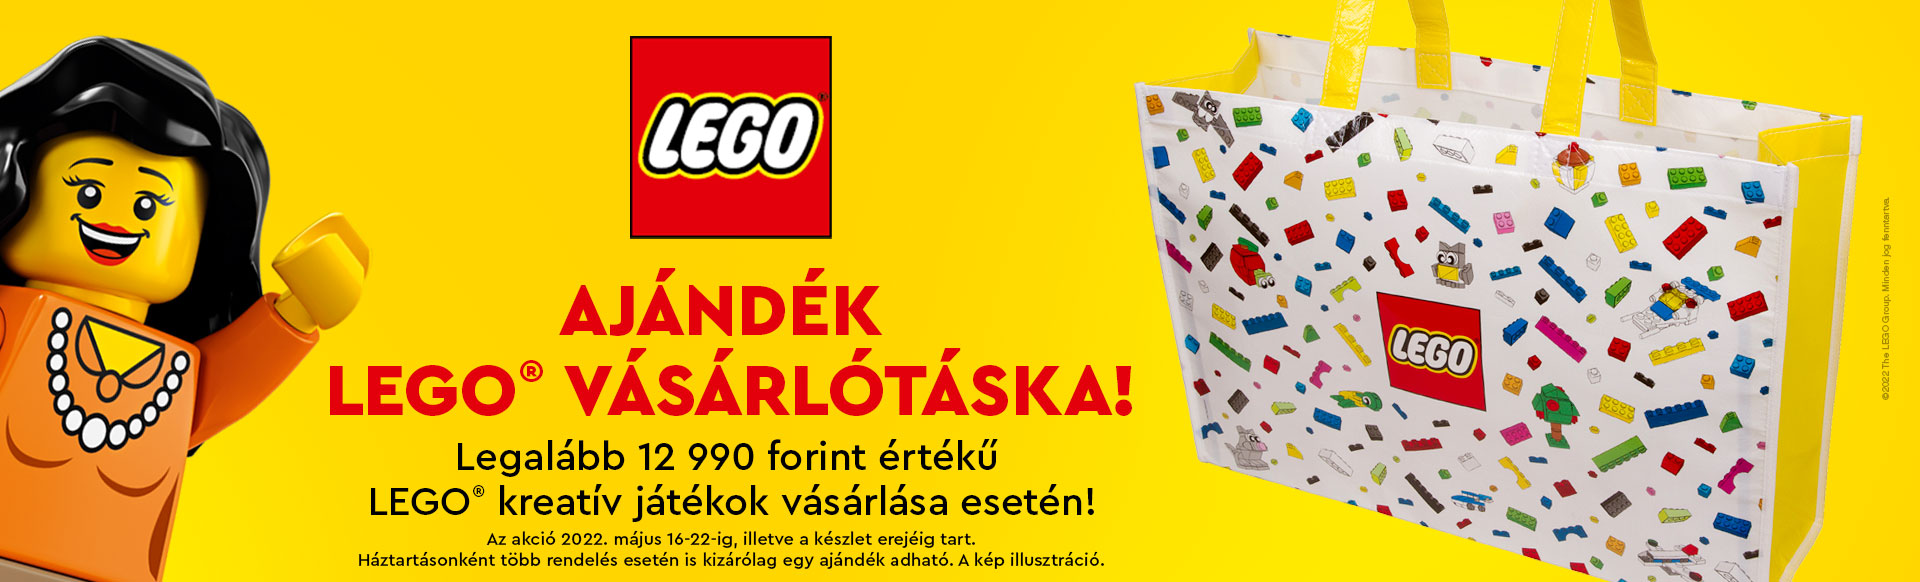 AJÁNDÉK LEGO® VÁSÁRLÓTÁSKA! Legalább 12990 forint értékű LEGO® kreatív játékok vásárlása esetén.